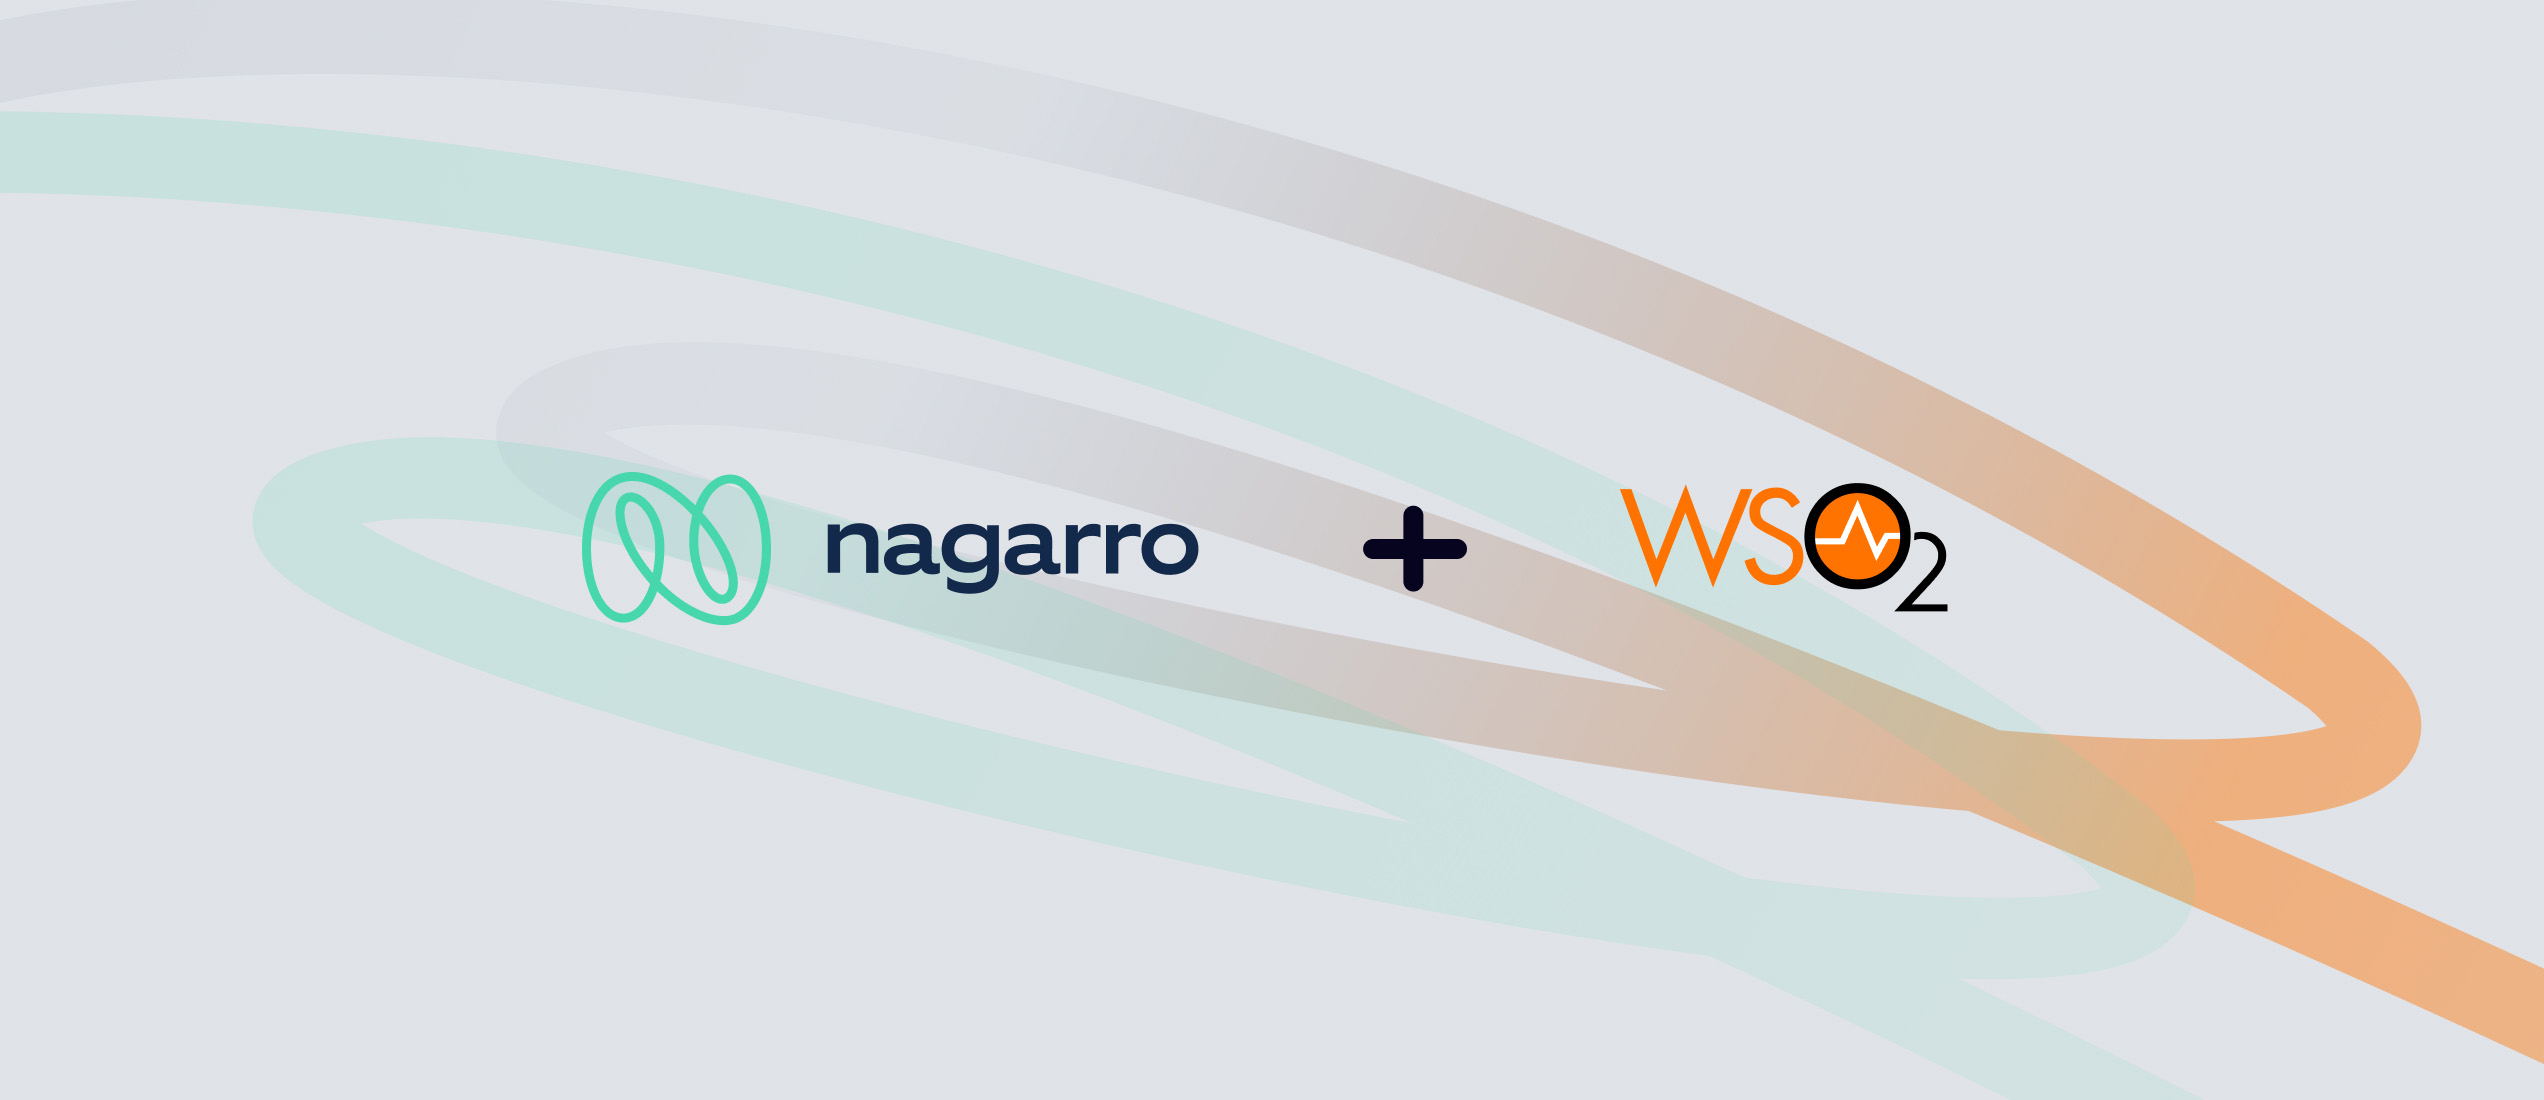 Nagarro and WSO2 enter into a partnership